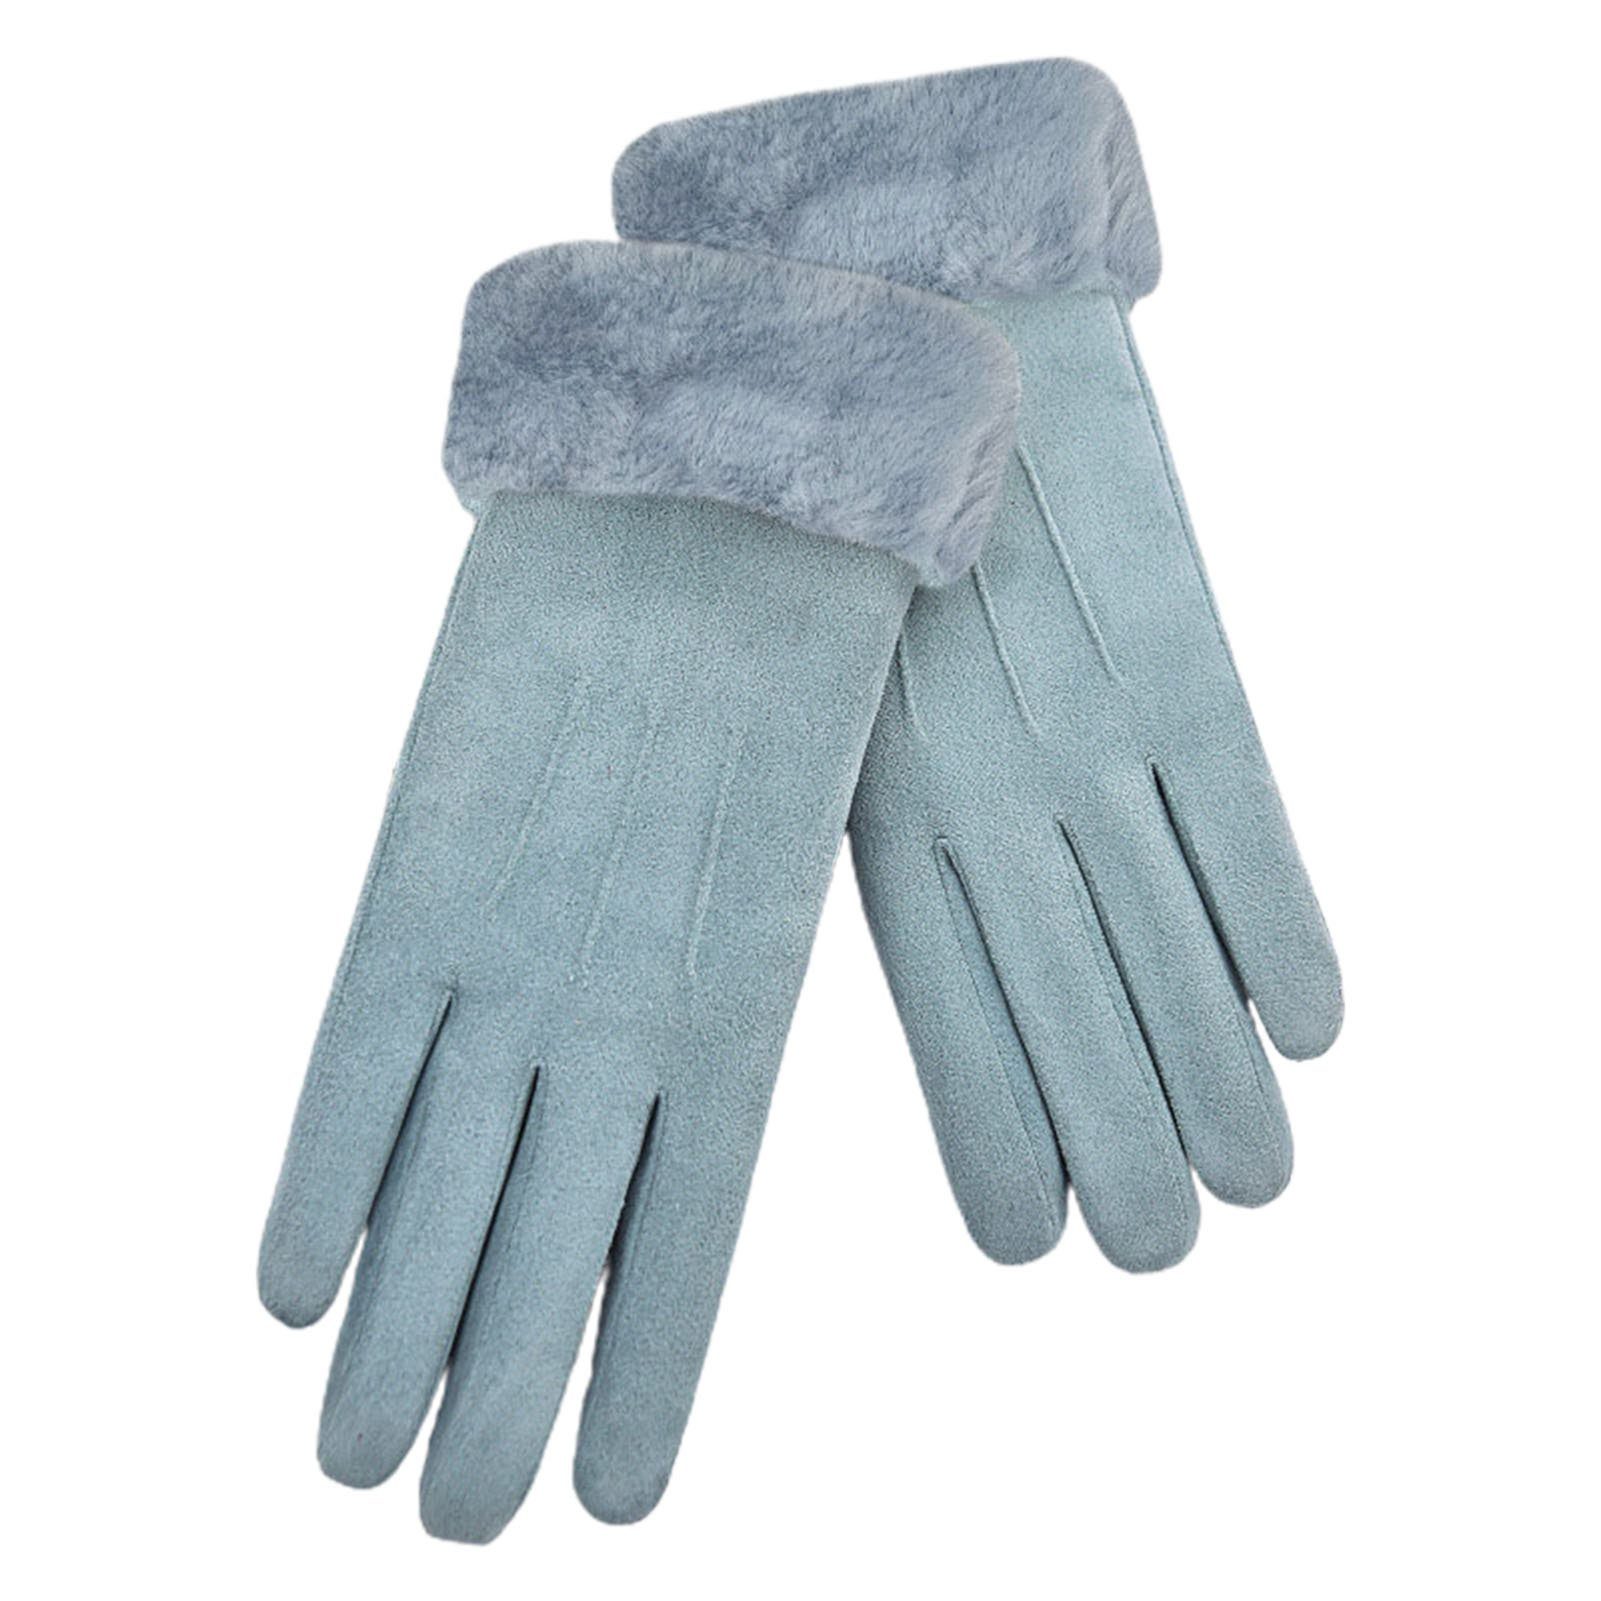 Rosa Fleecehandschuhe Damen-Winter-Fleece-Handschuhe, Elastischer Blusmart Wildlederstoff